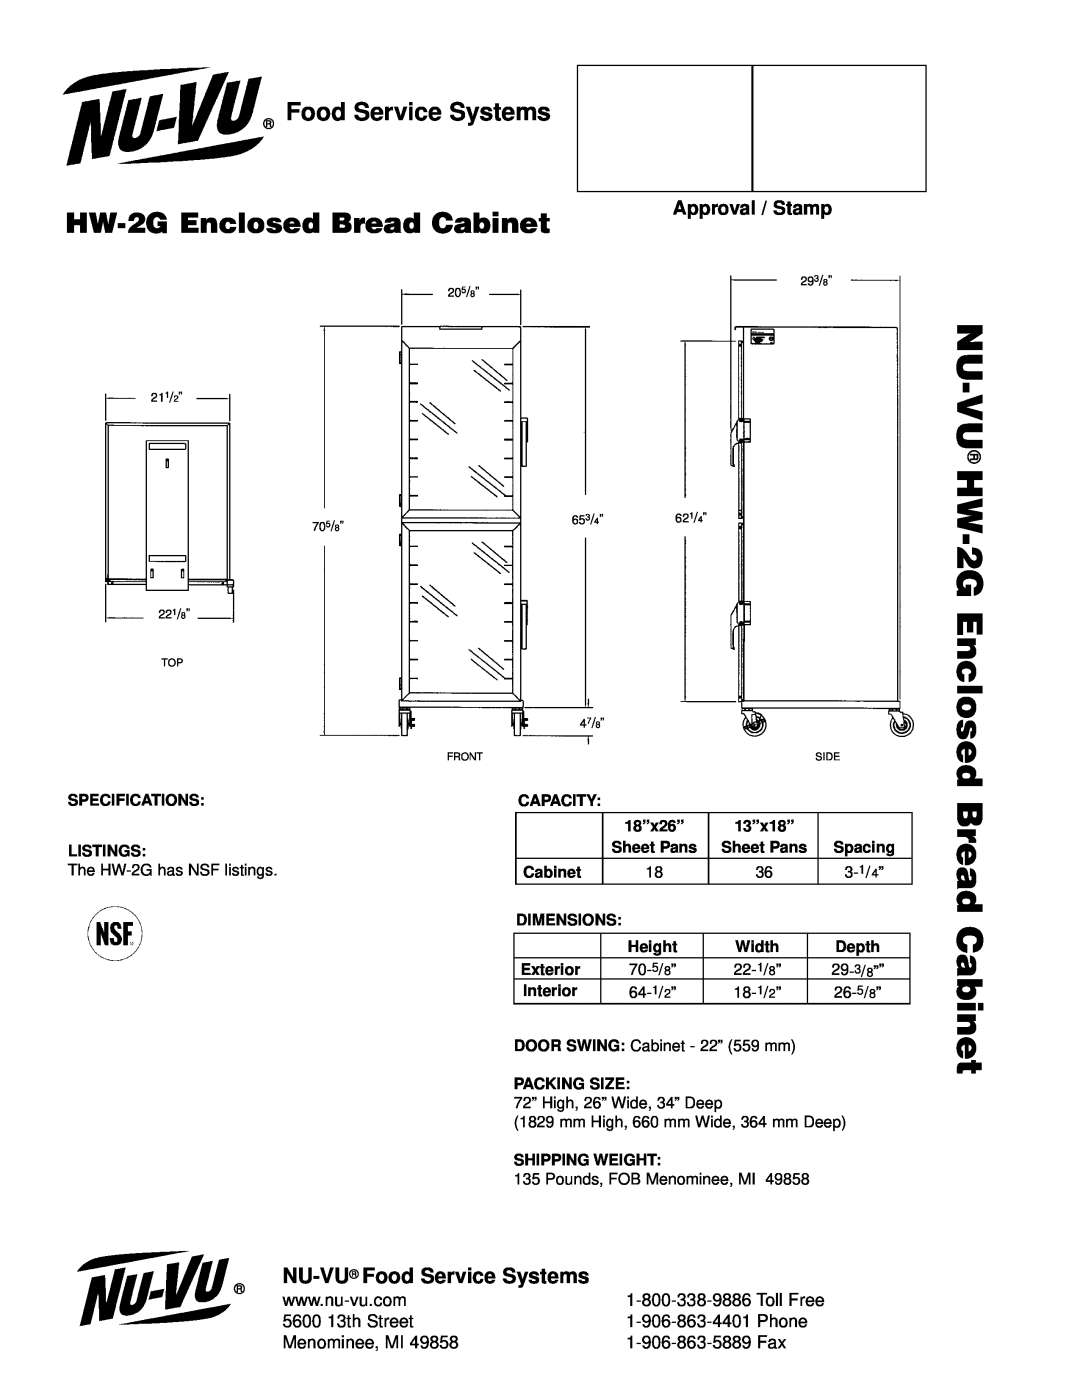 Nu-Vu Nu-Vu Hw, HW-2GEnclosed Bread Cabinet, NU-VU Food Service Systems, Approval / Stamp, 5600 13th Street 